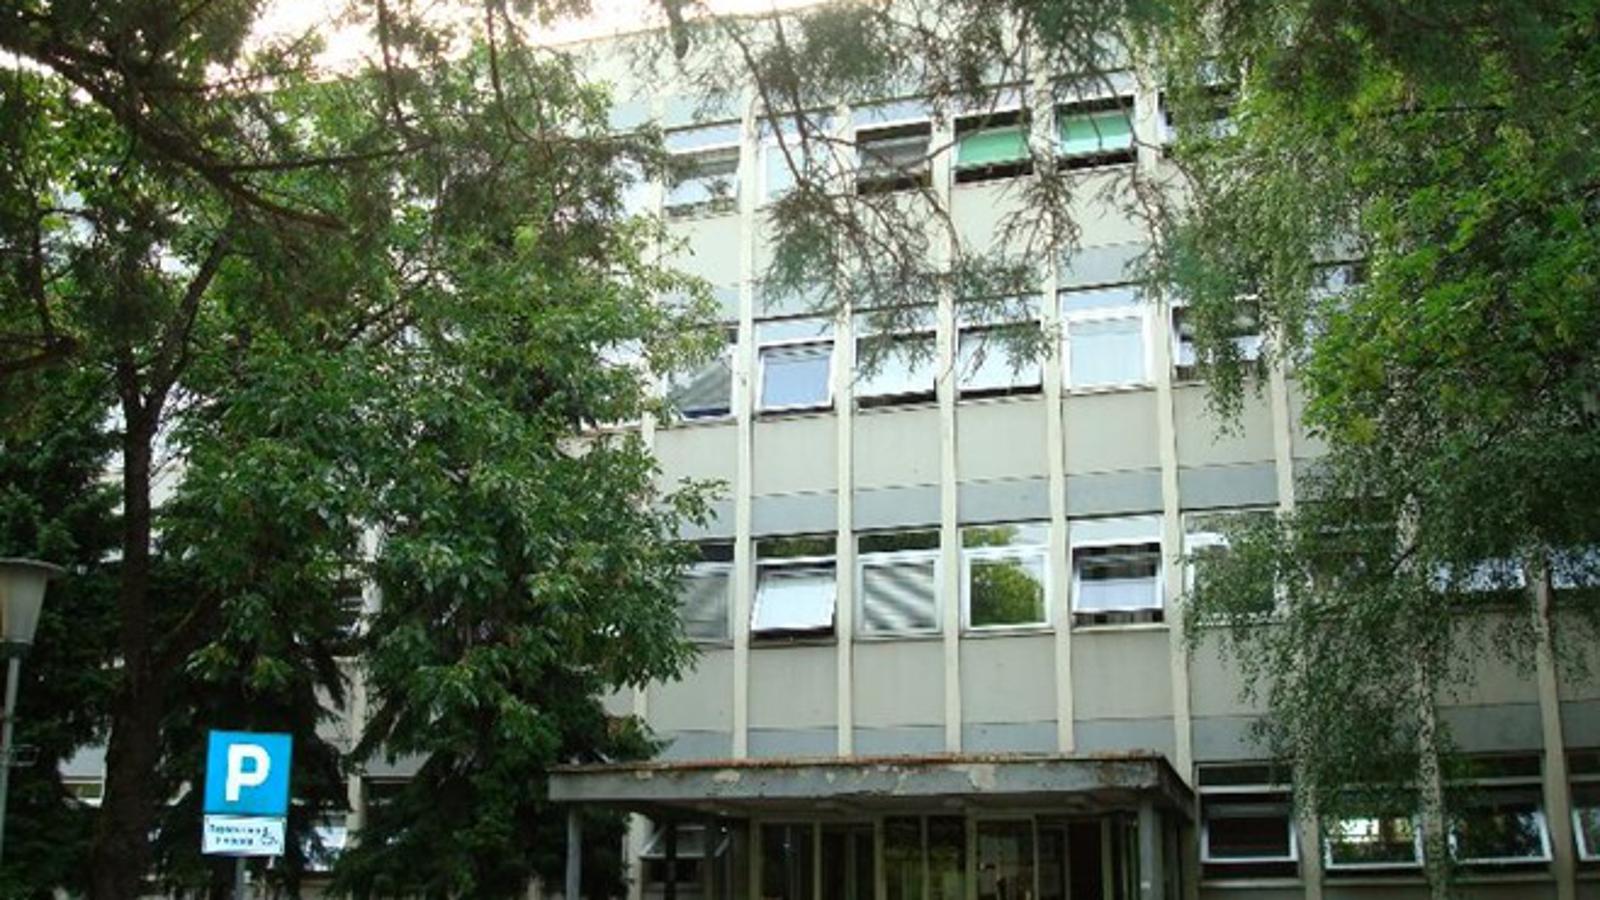 Ulaz u zgradu Općinskog suda u Slavonskom Brodu okružen zelenilom ljeti